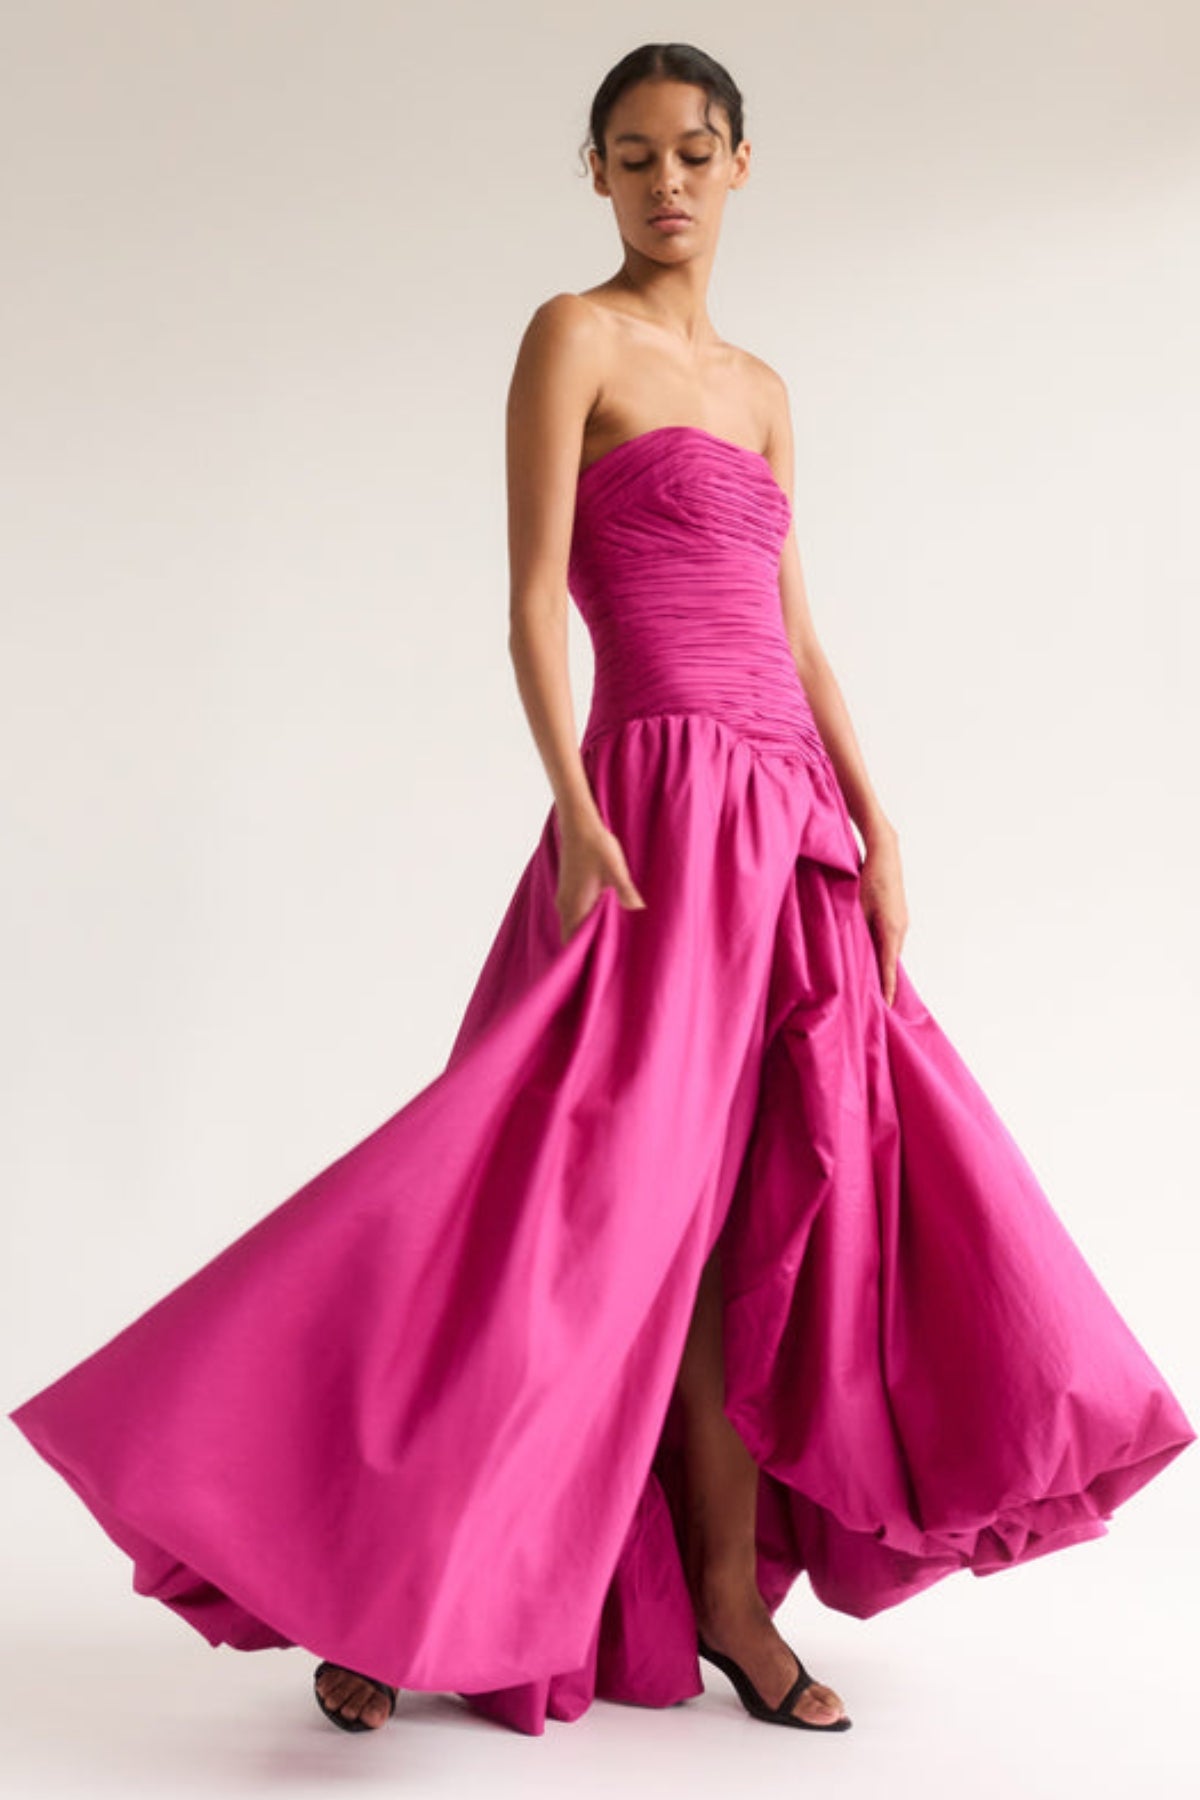 AJE Violette Bubble Dress (Pink)